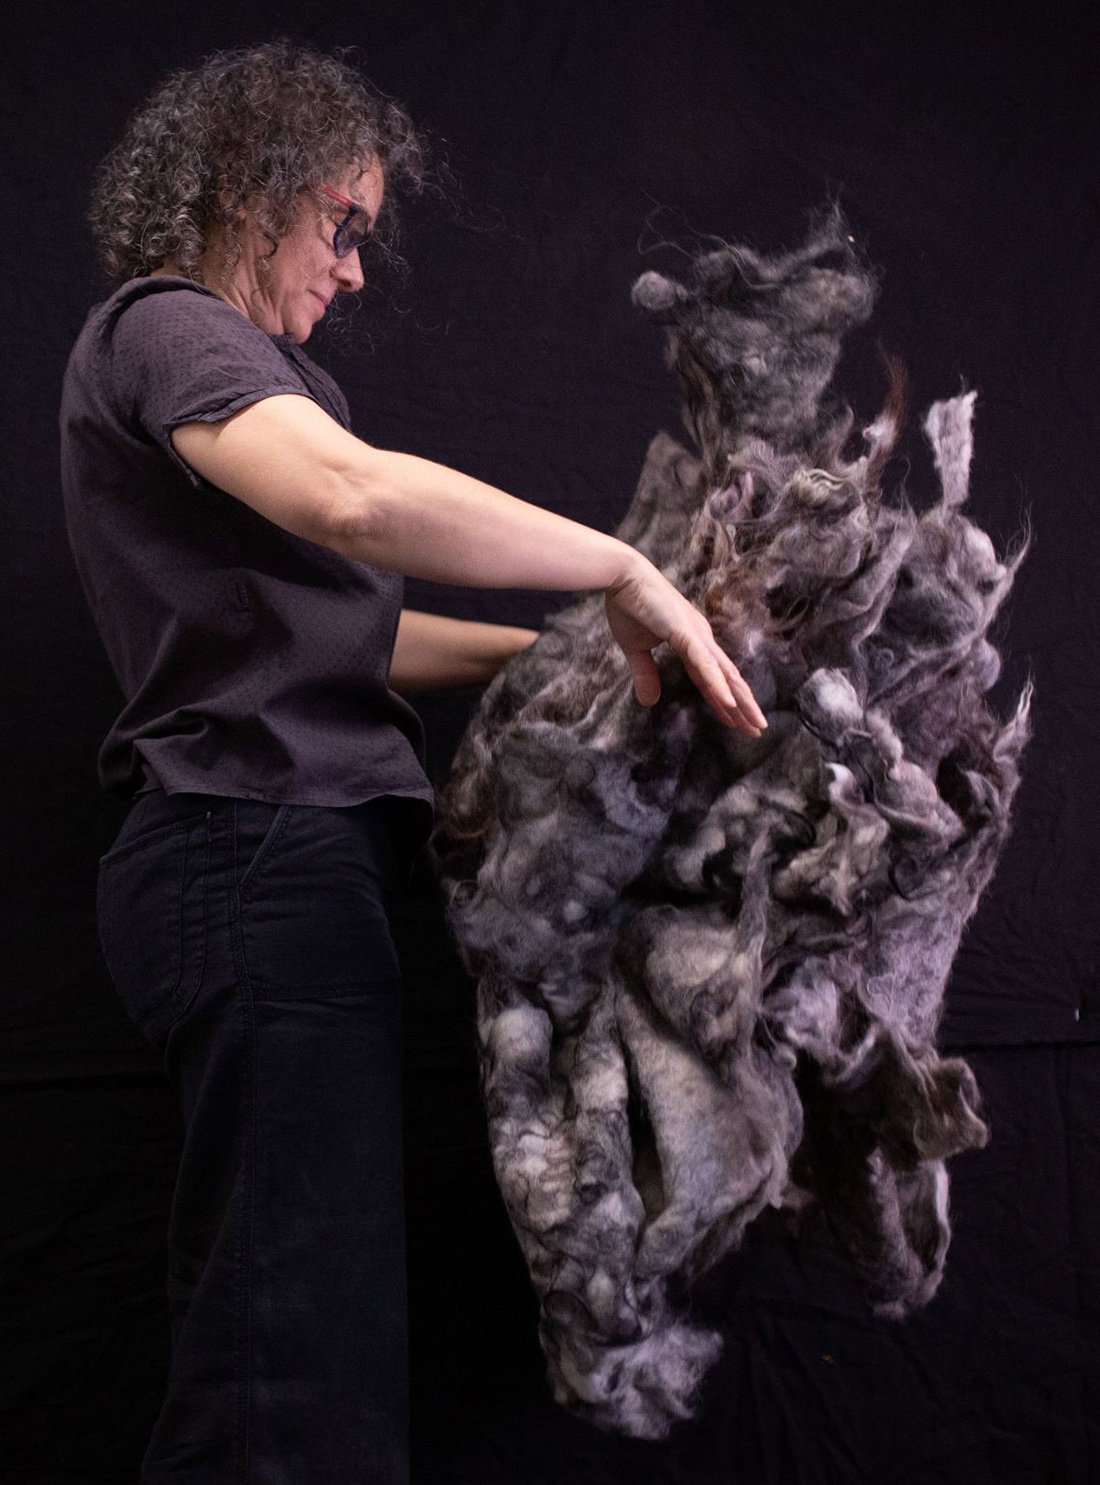 Bilde av forsker i arbeid med en stor mengde ull